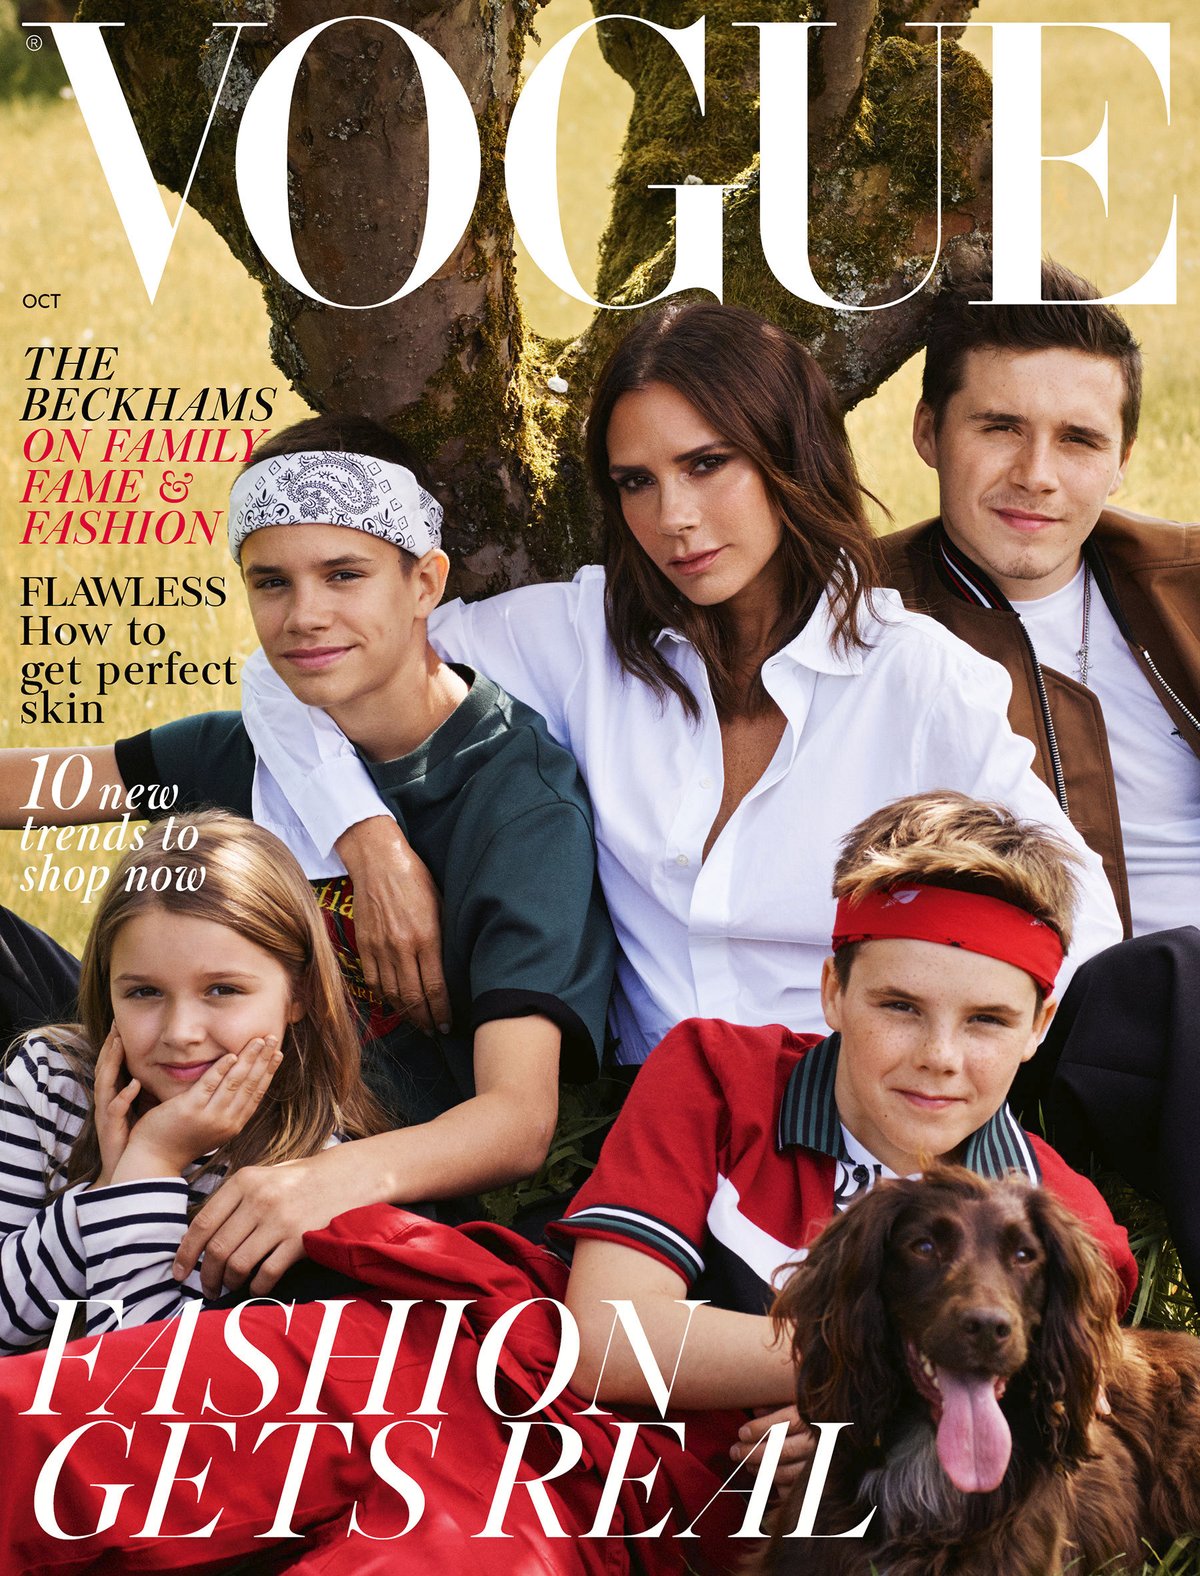 Na titulní straně Vogue je Victoria Beckham s dětmi a psem, David ale chybí.